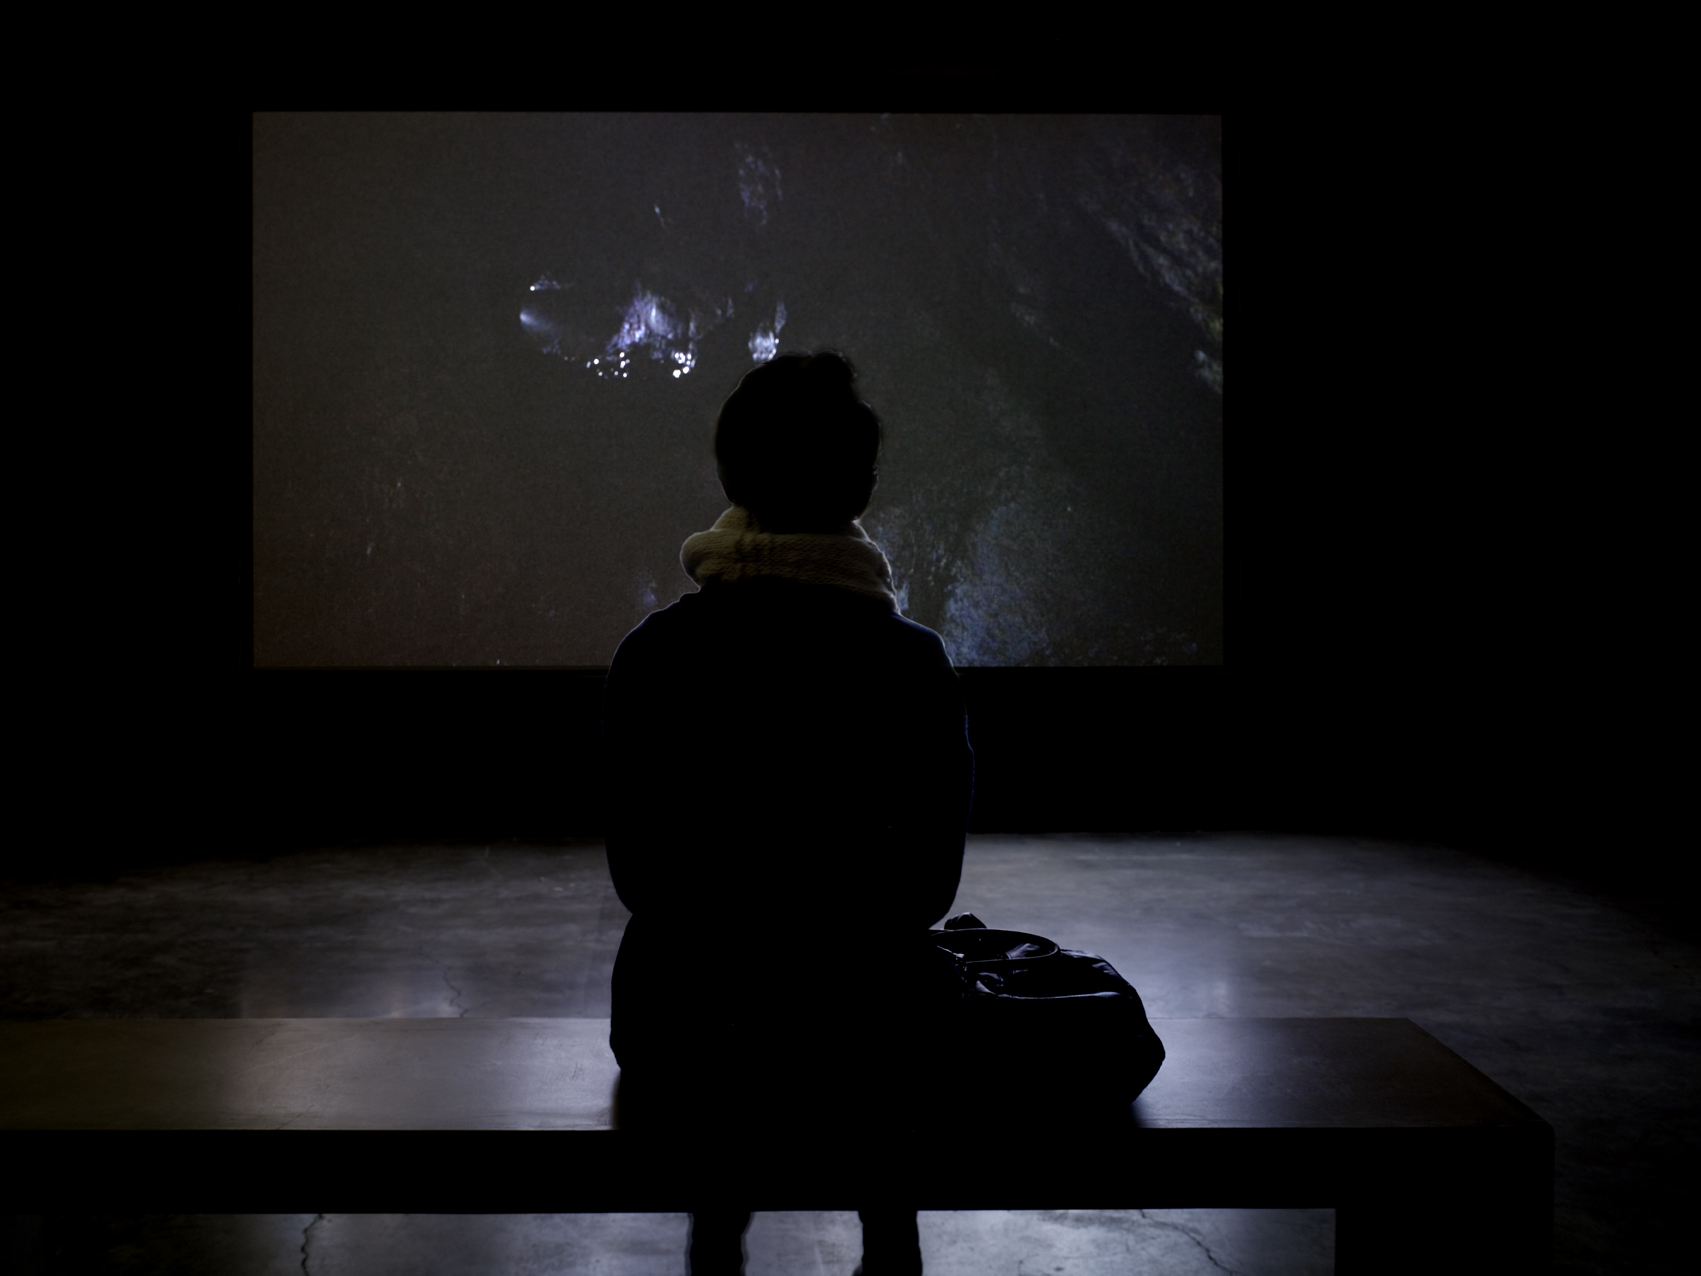 Vue de l’exposition de Laurent Pernot “Ruée vers la perdition”, Palais de Tokyo. Sam Art Projects. Photo André Morin.